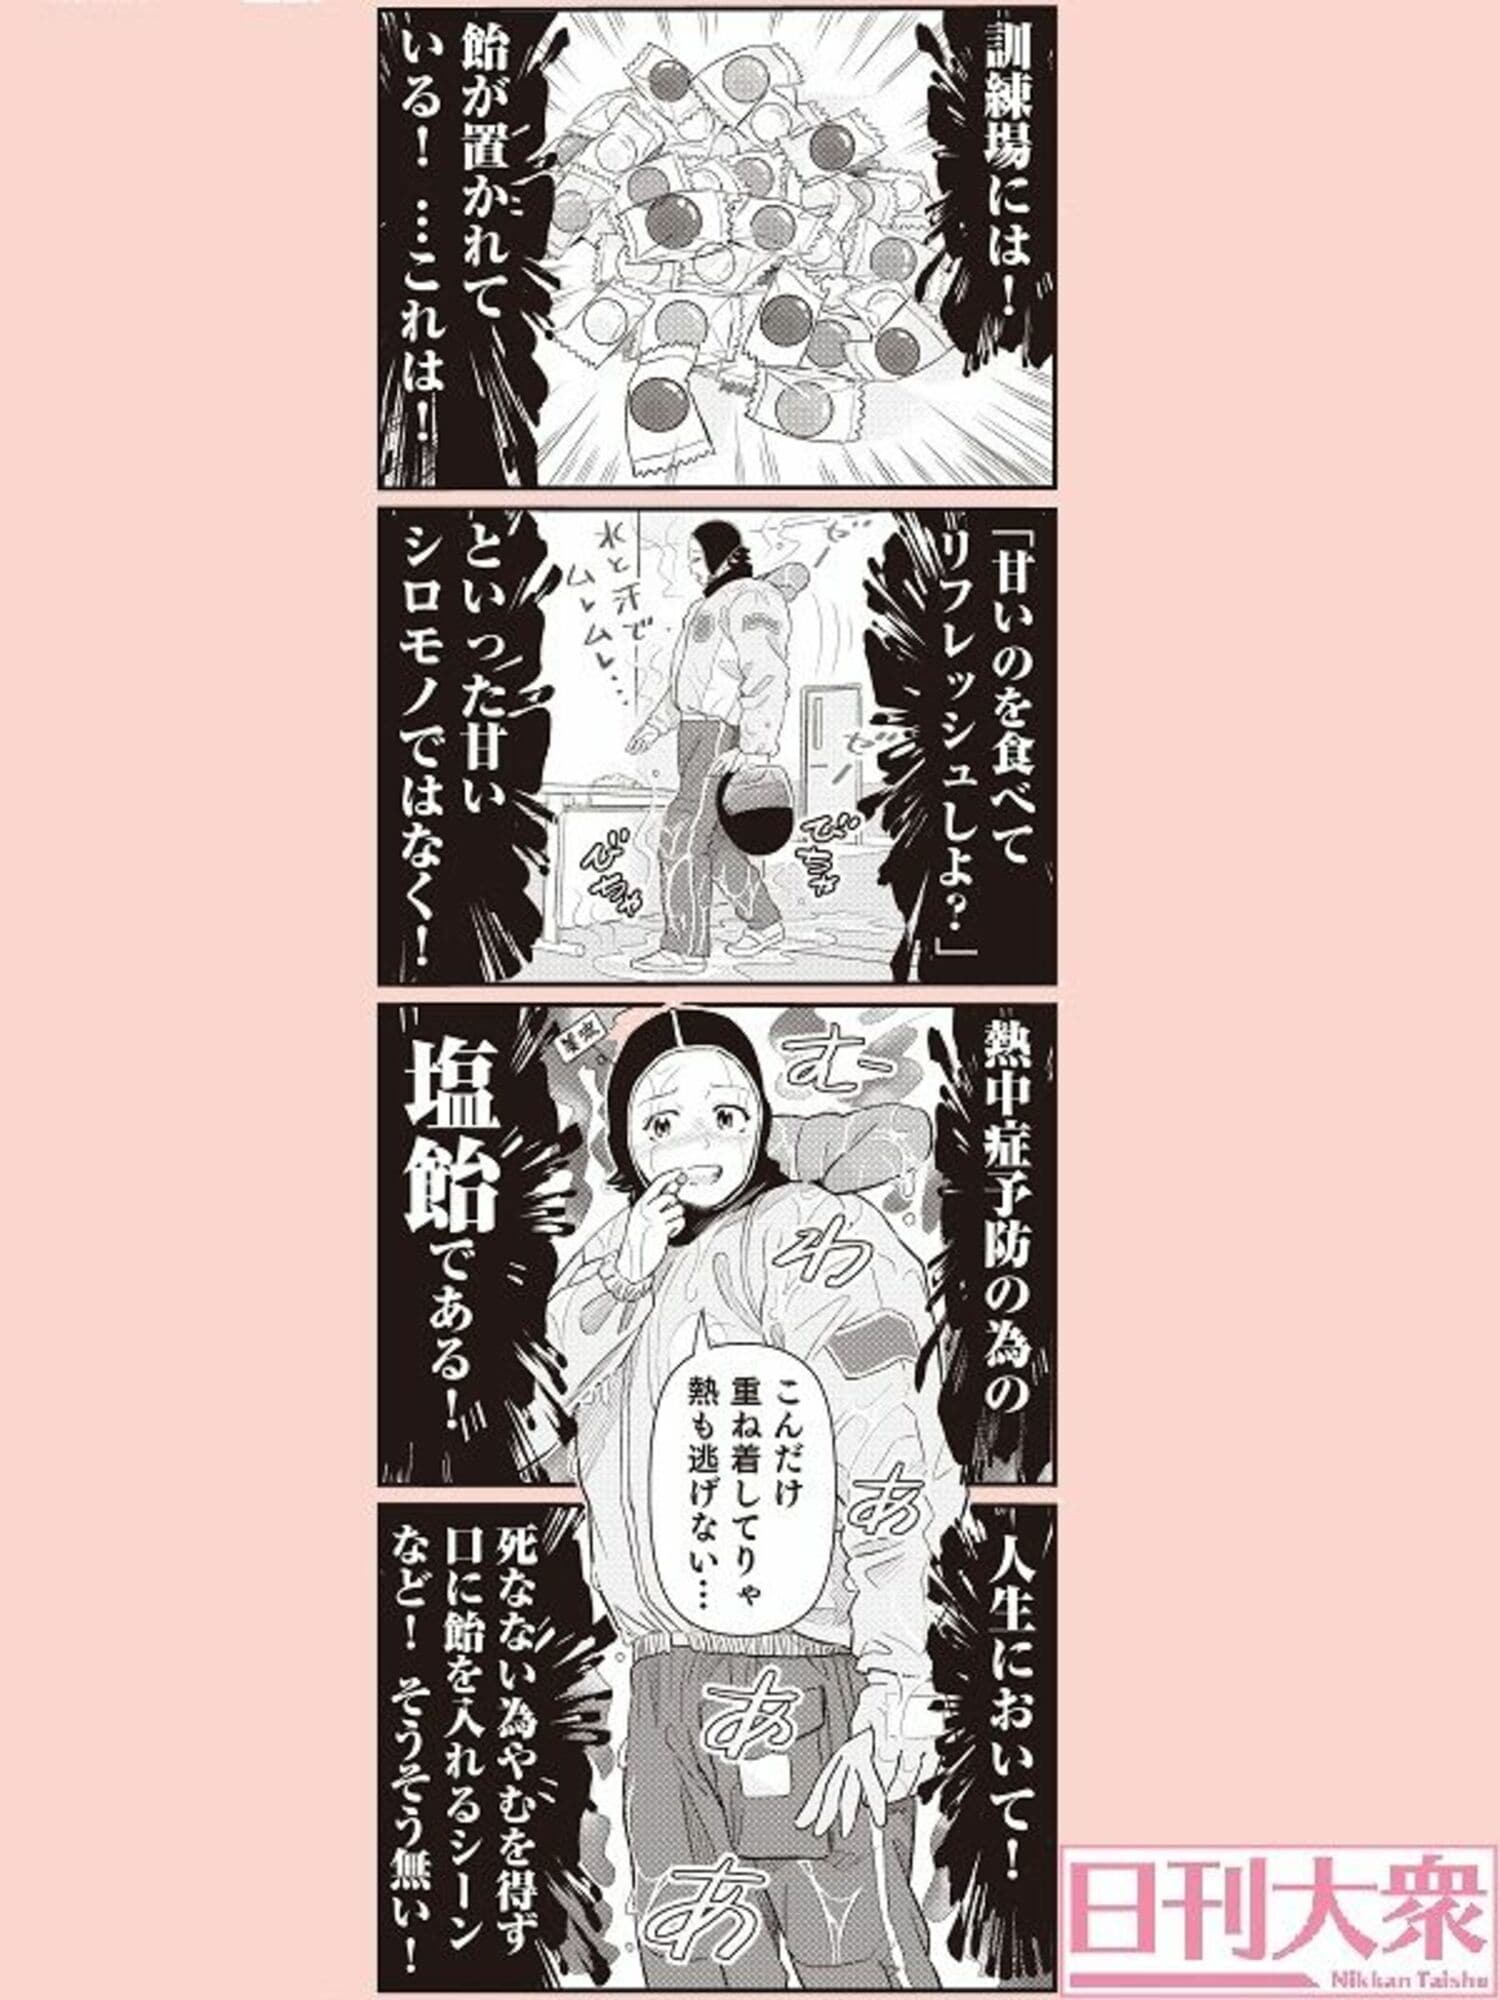 【週刊大衆連動】4コマ漫画『ボートレース訓練生・美波』第11話こぼれ話の画像